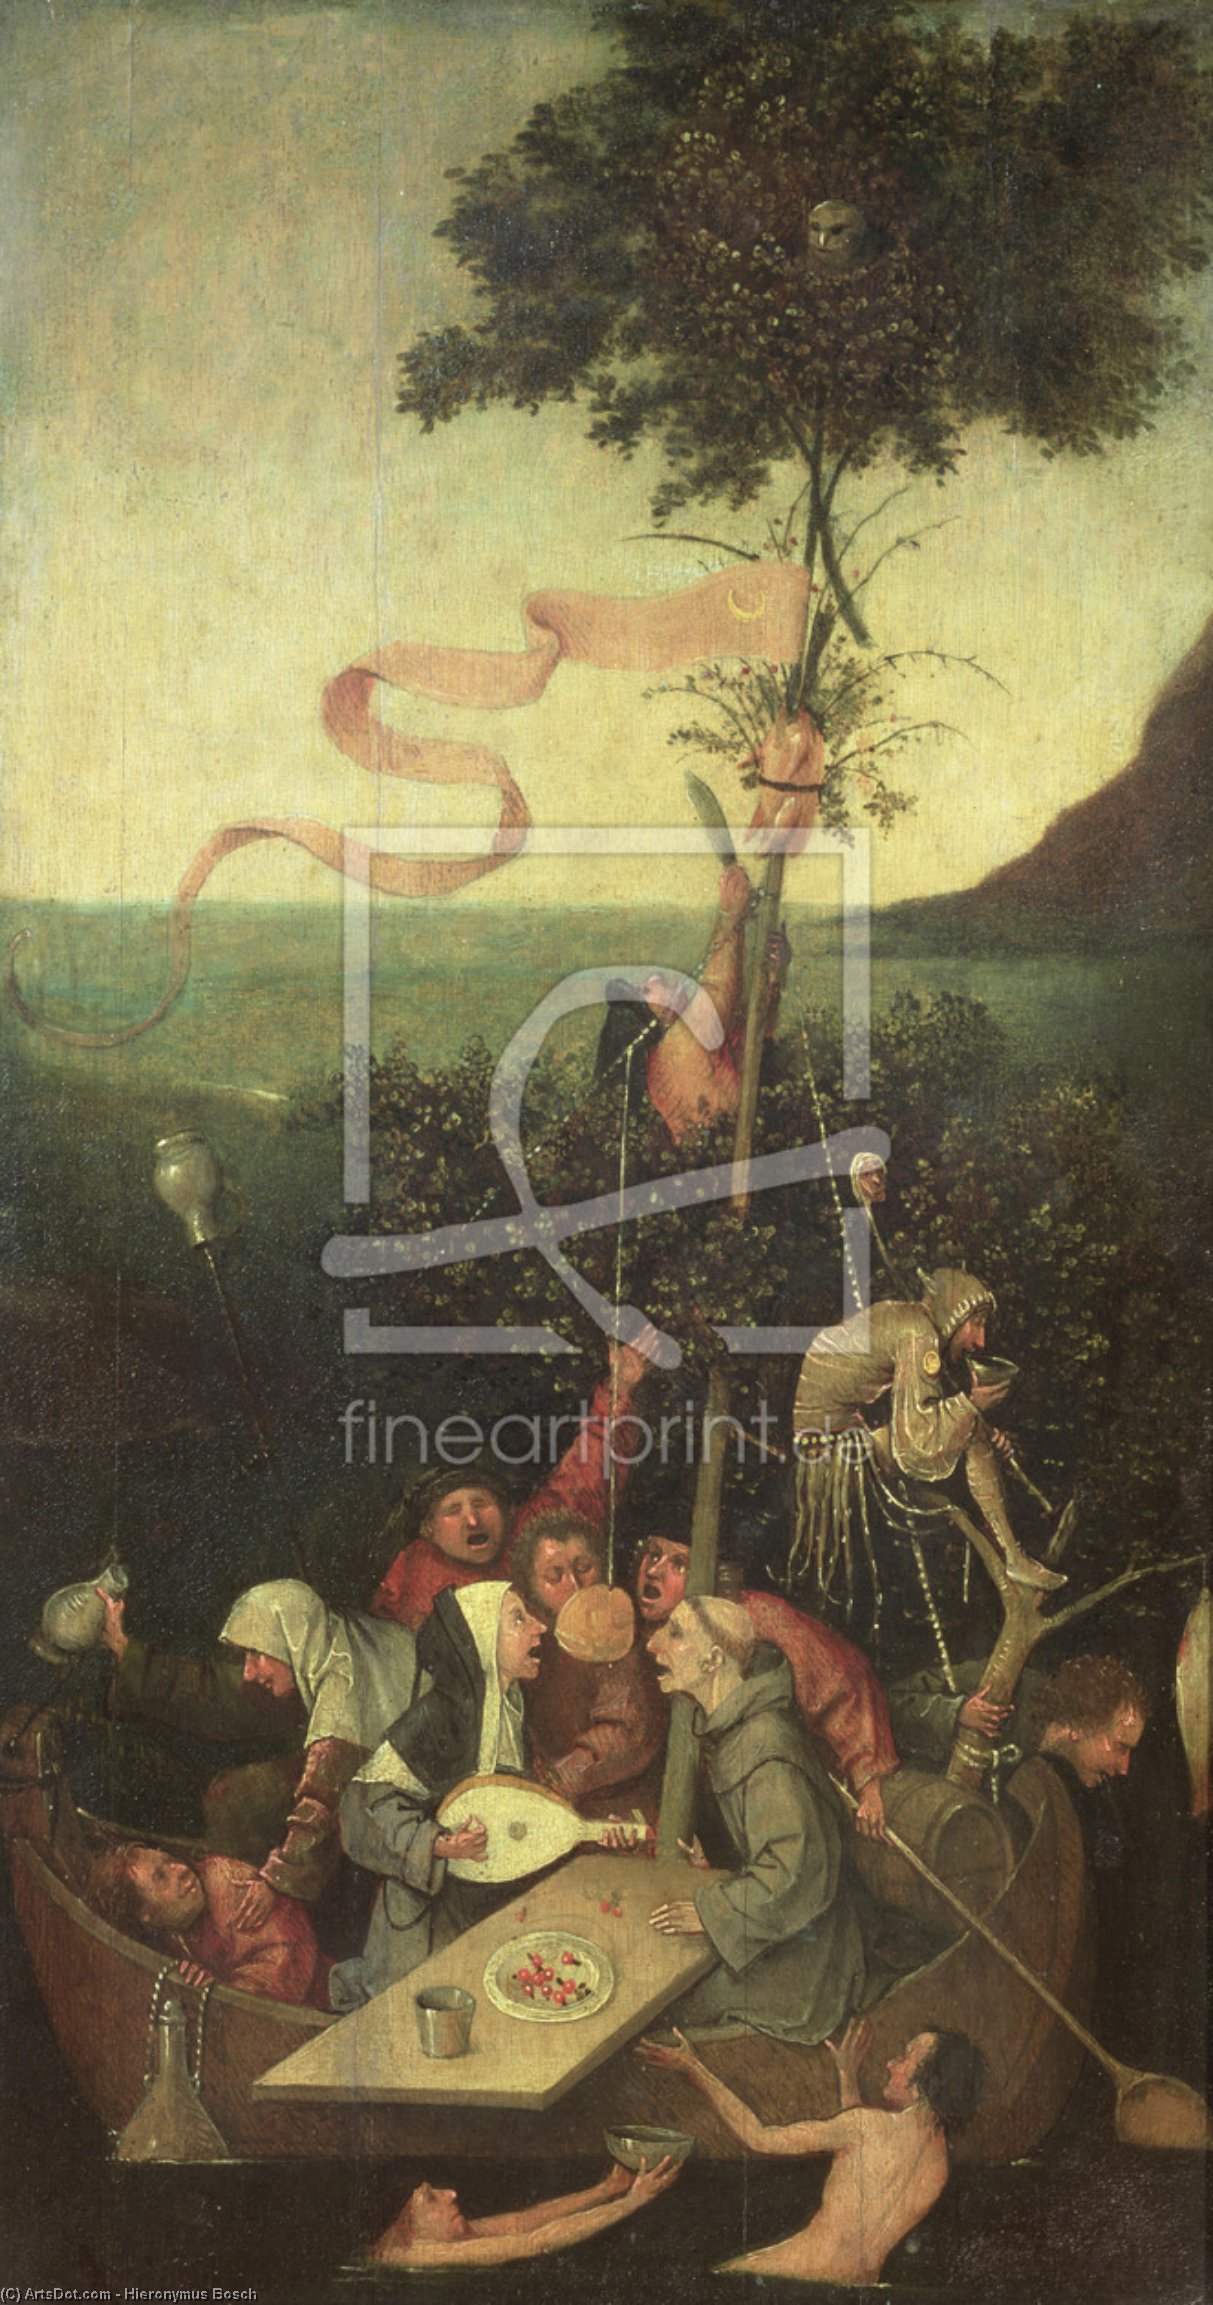 Acheter Reproductions D'art De Musée Le vaisseau des fous, 1500 de Hieronymus Bosch (1450-1516, Netherlands) | ArtsDot.com